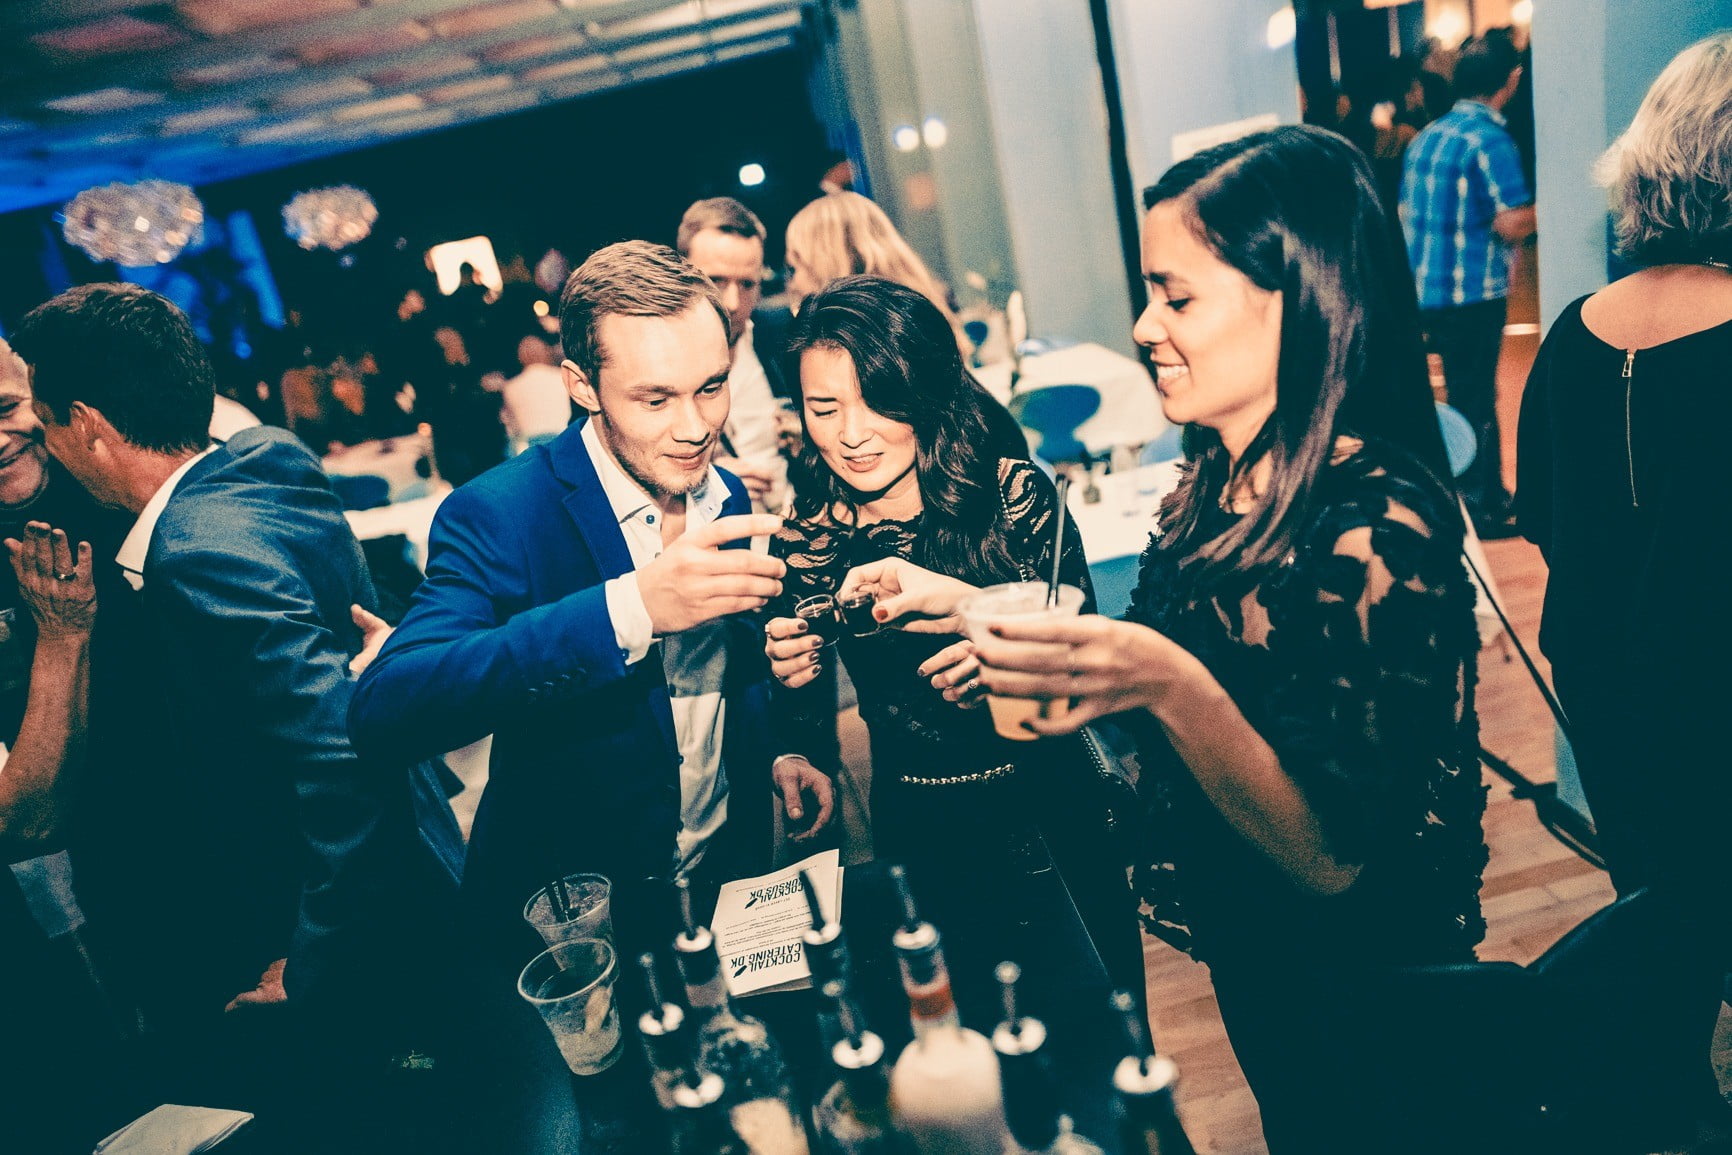 Deltagere på et teambuilding cocktailkursus nyder deres drinks og har det sjovt sammen